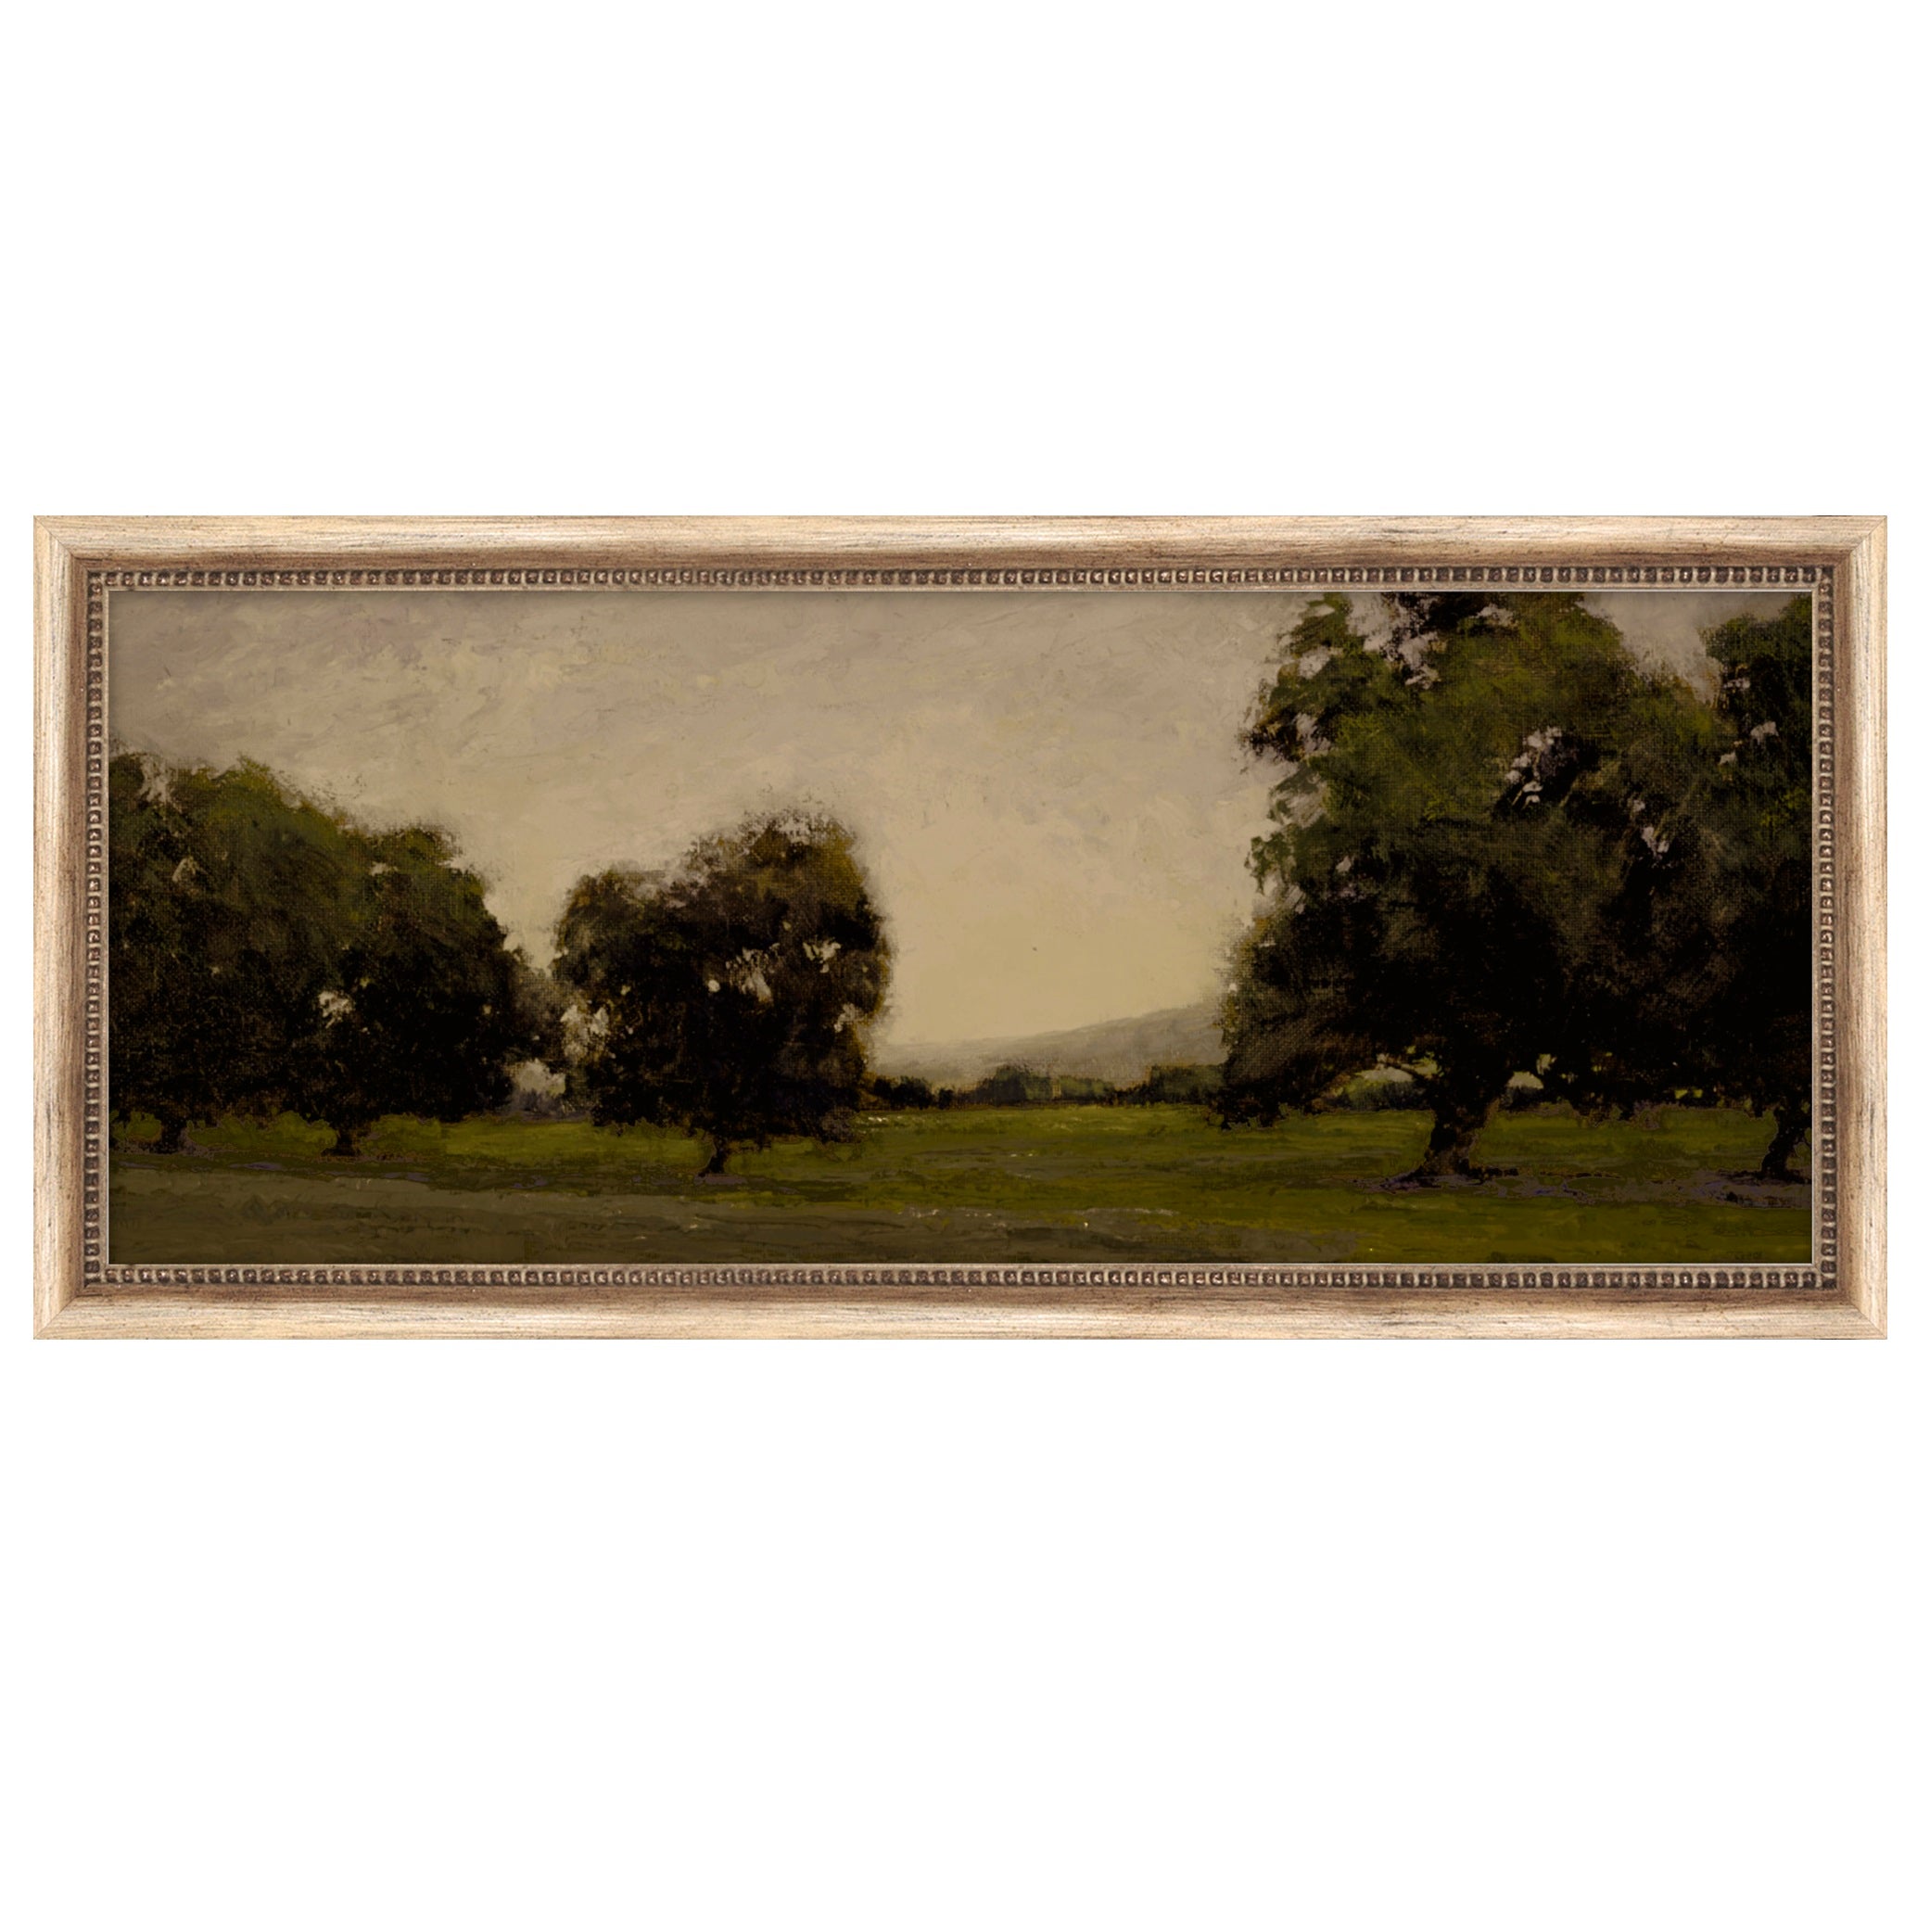 framed wall art called Quiet Field I $188.00